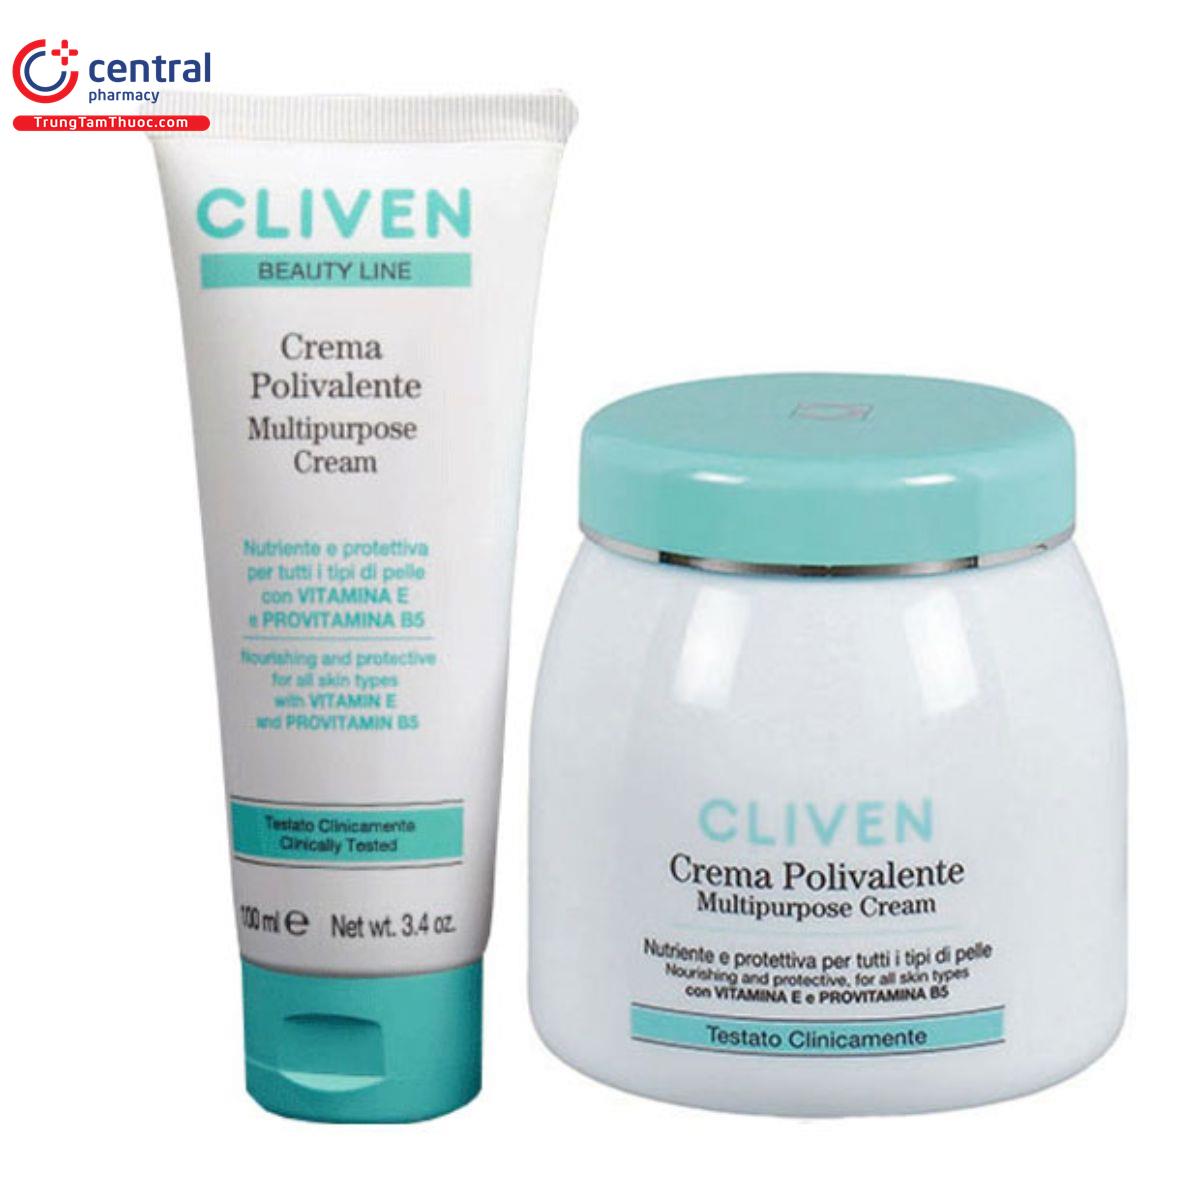 cliven crema polivalente multipurpose cream 10 D1532